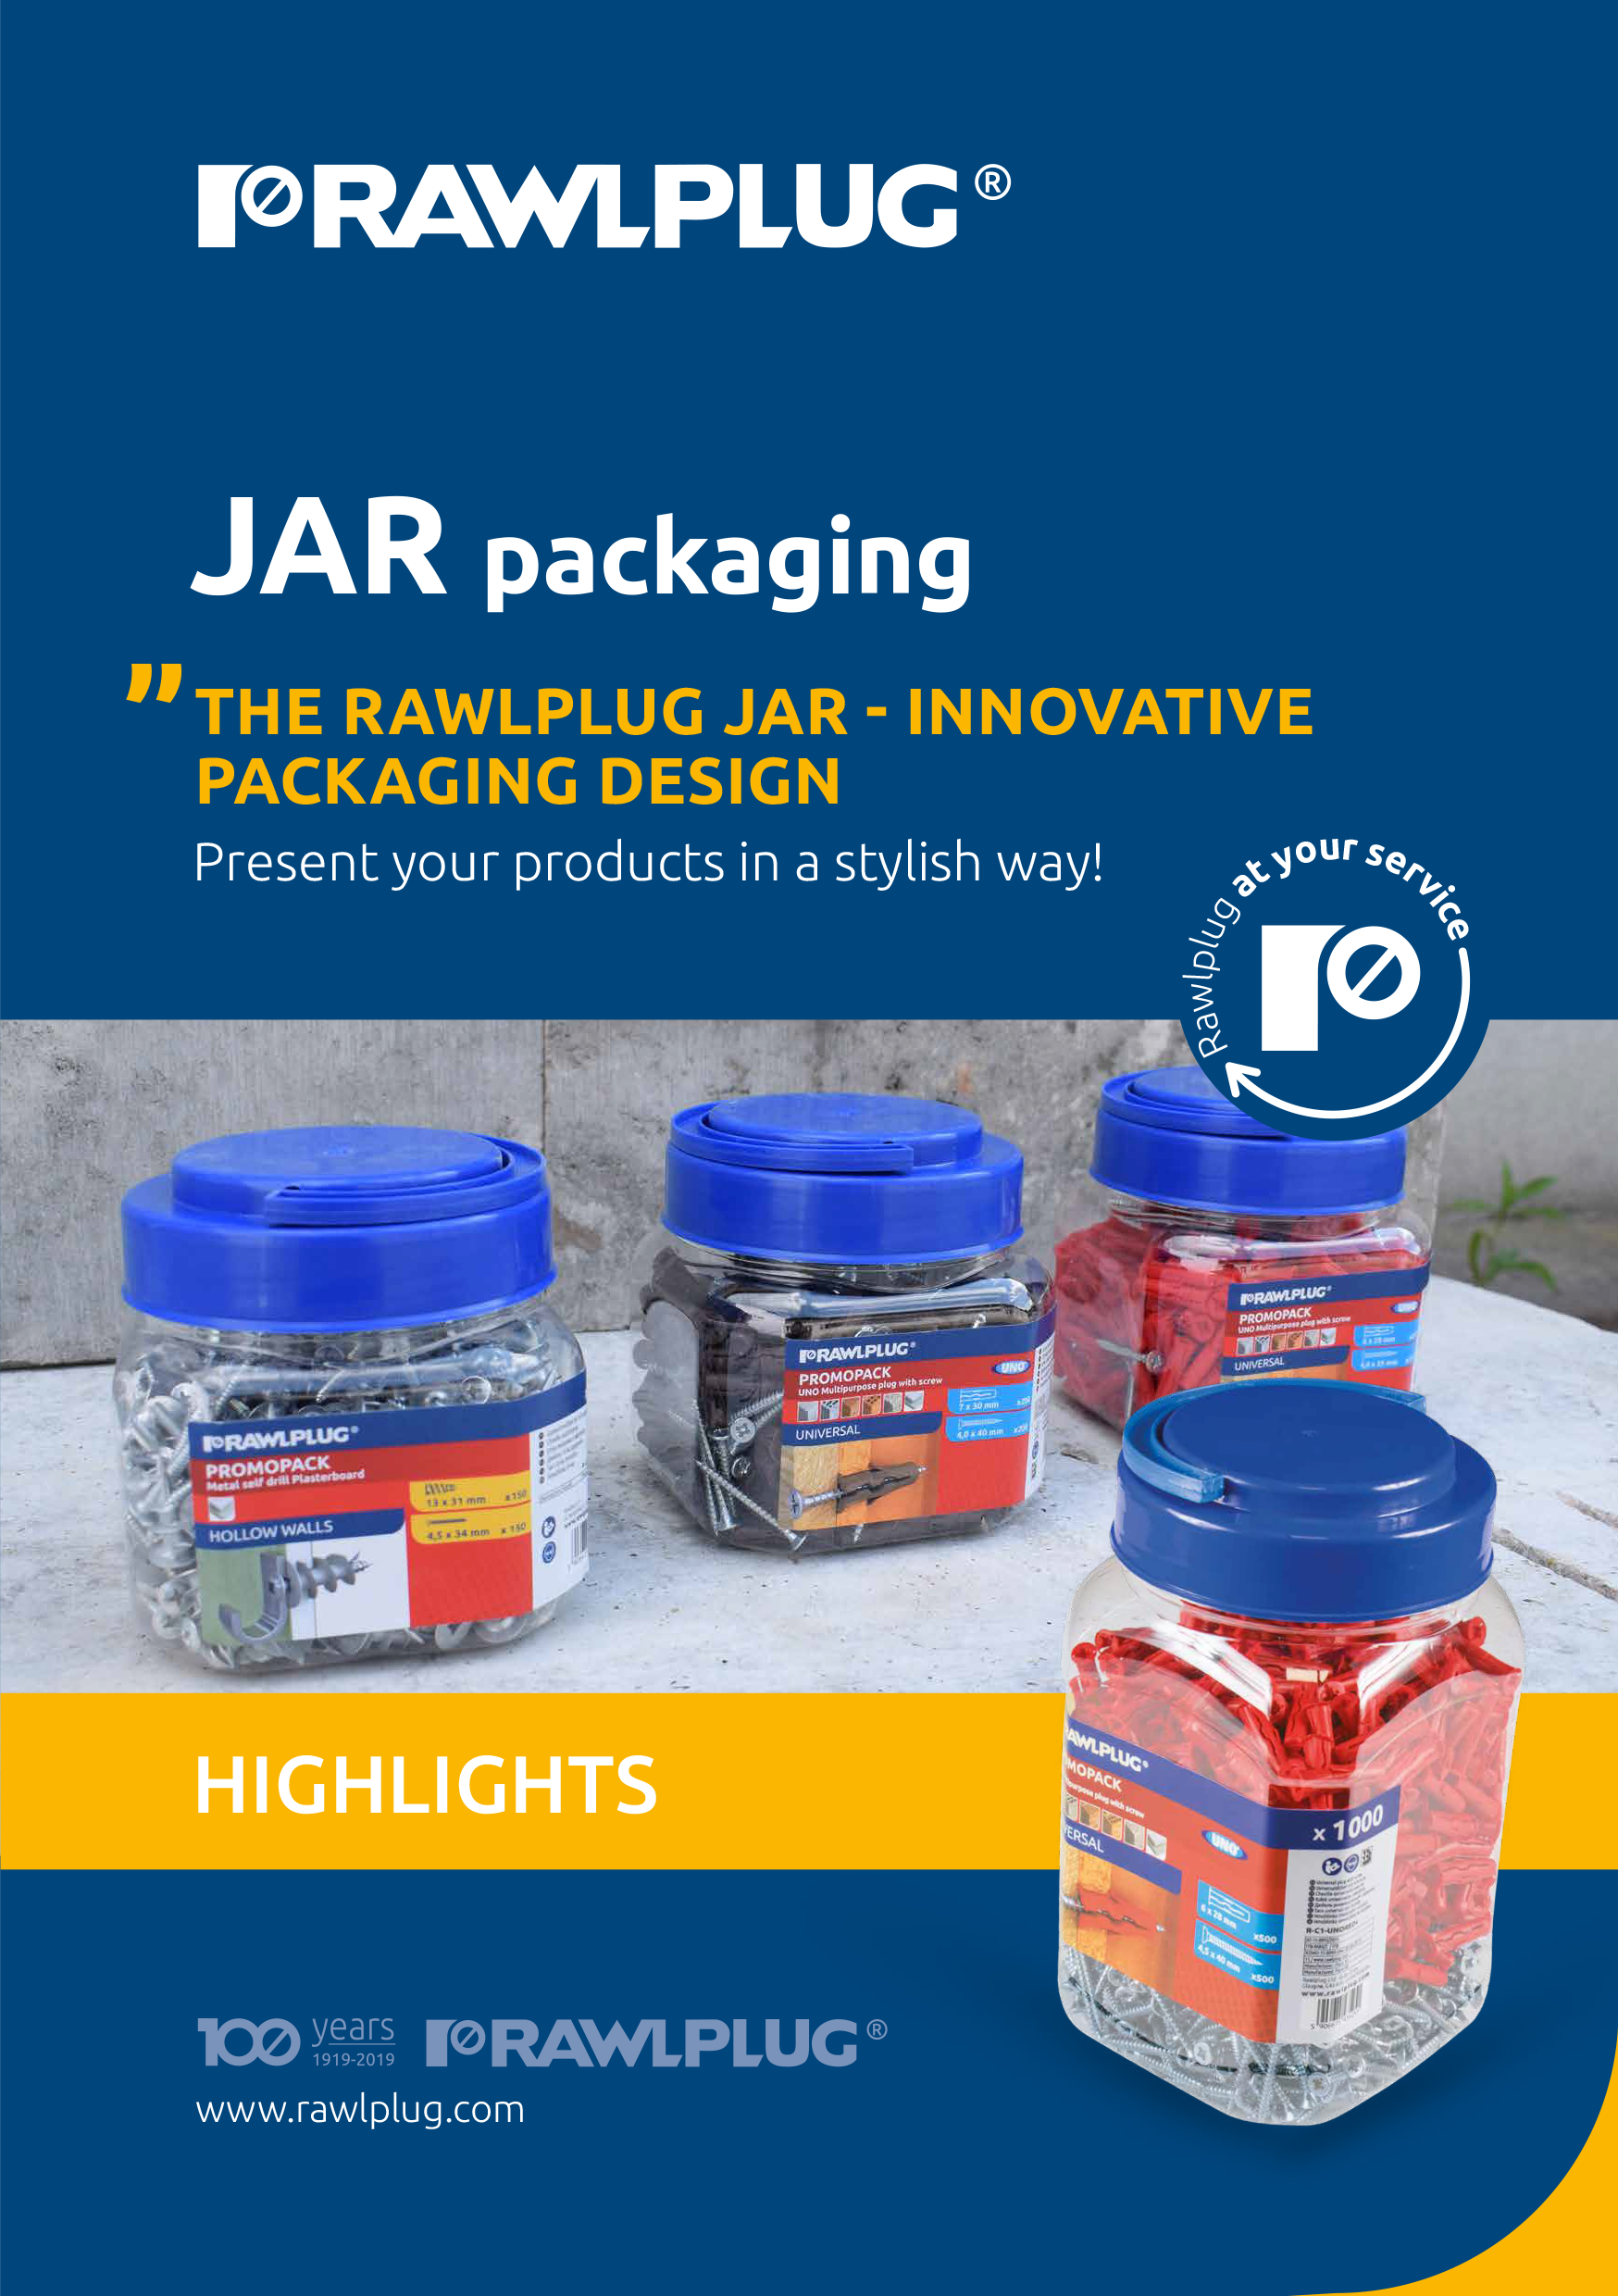 Rawlplug DIY Jar options